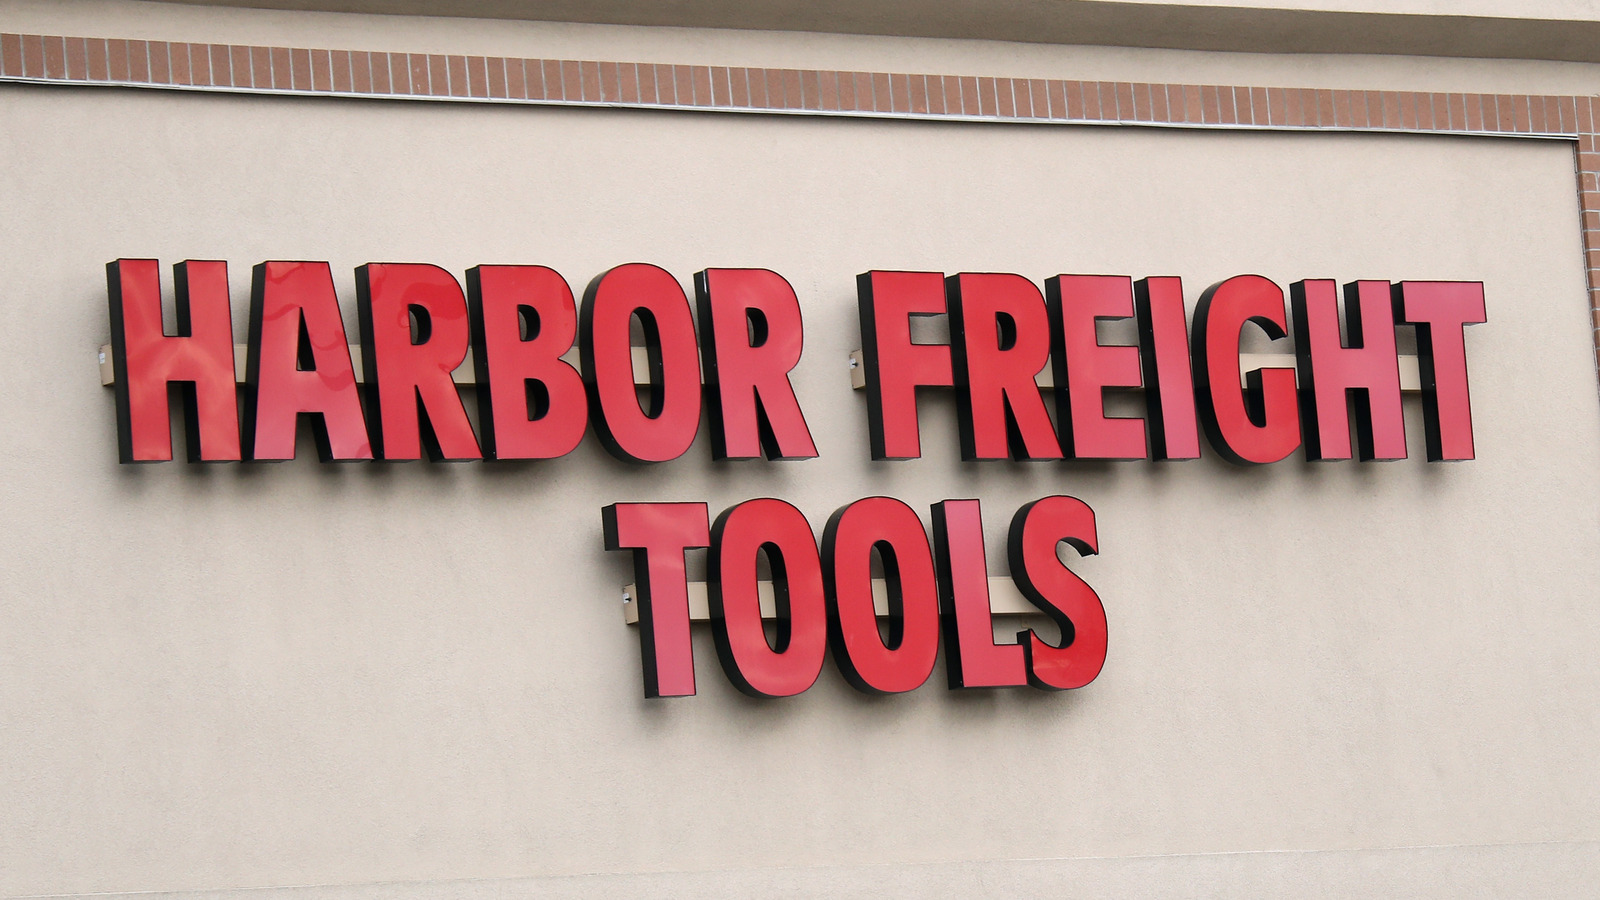 ¿Qué marca es el revestimiento para cajas de herramientas de Harbor Freight y cuánto cuesta?